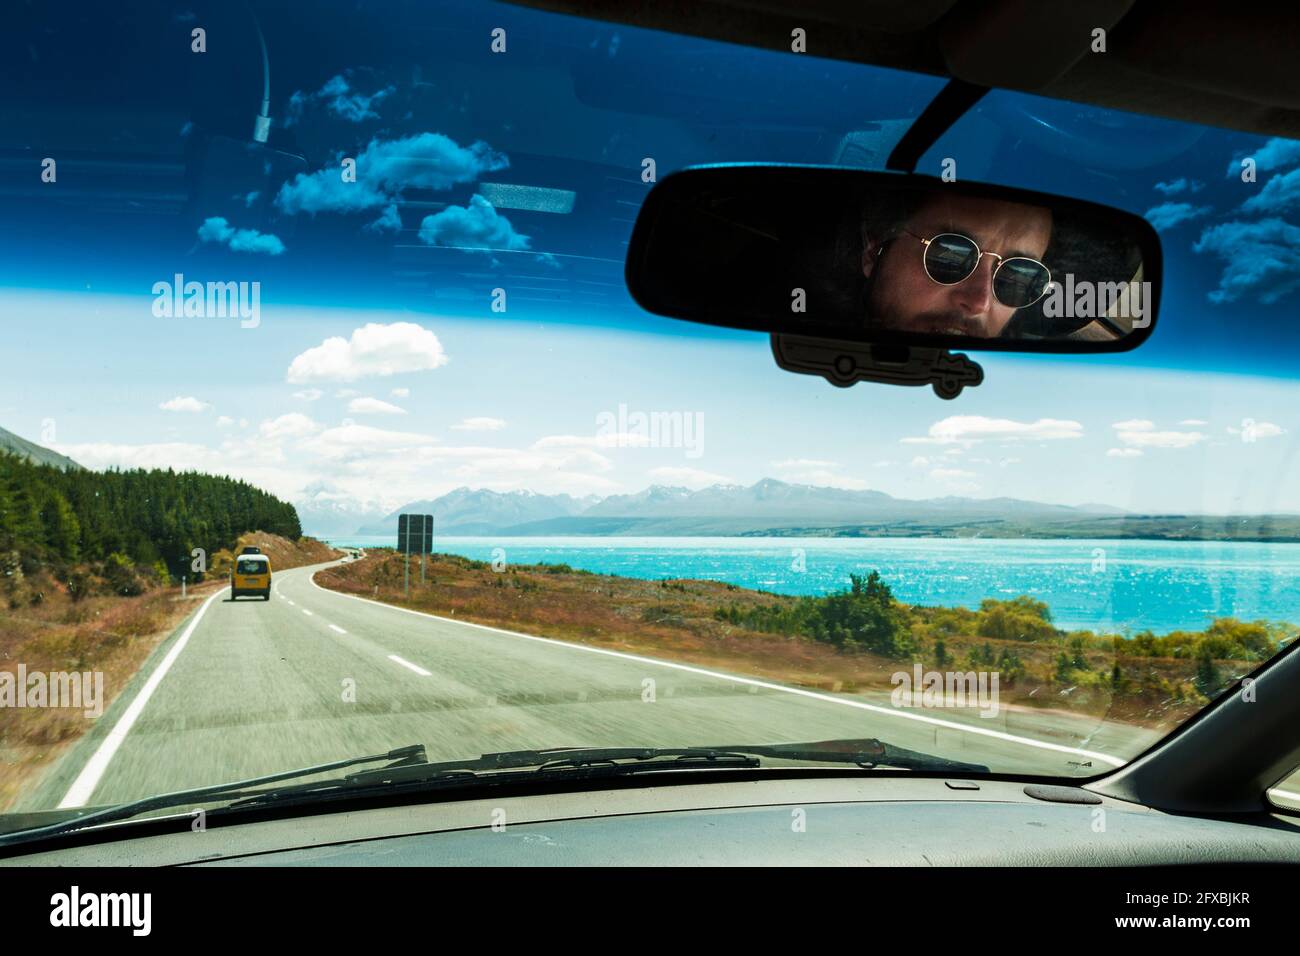 Miroir de vision arrière reflet de l'homme conduisant une voiture le long du lac sur l'autoroute Banque D'Images